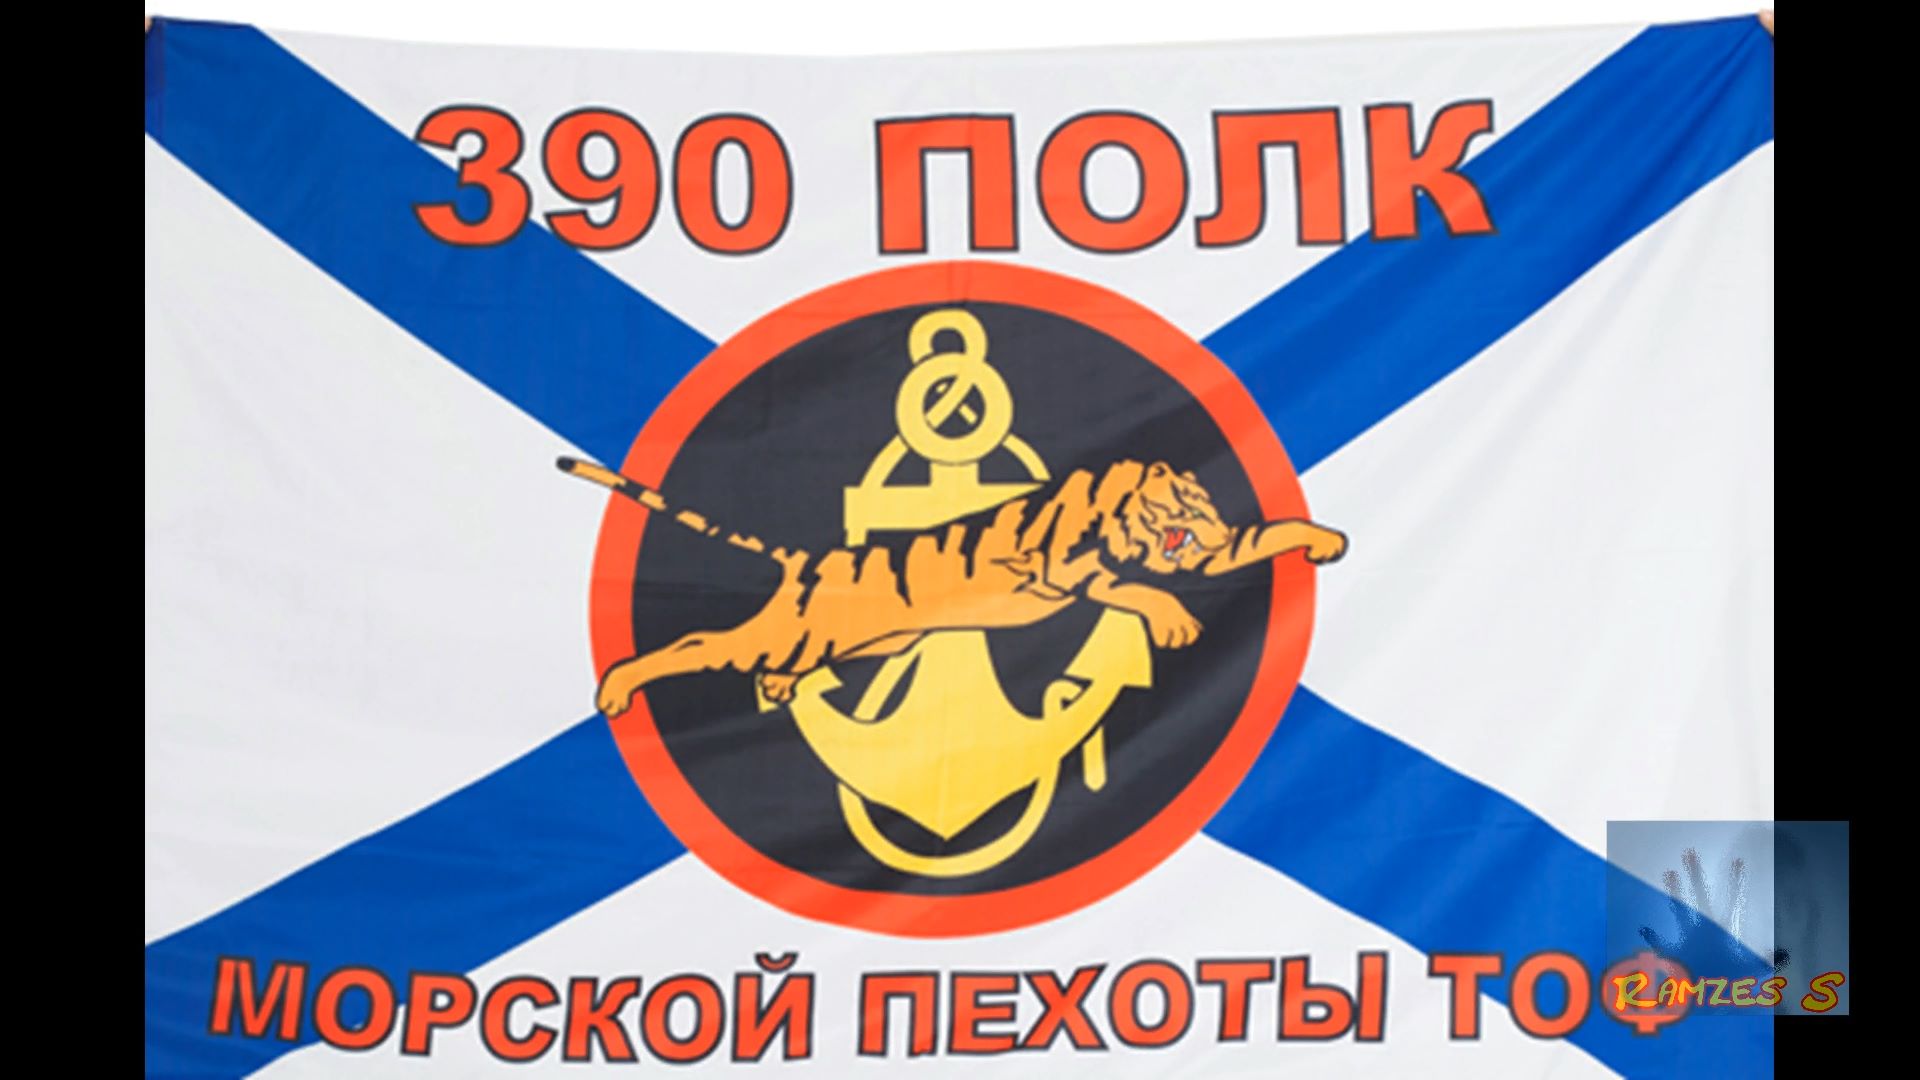 390 полк морской пехоты славянка 1 батальон